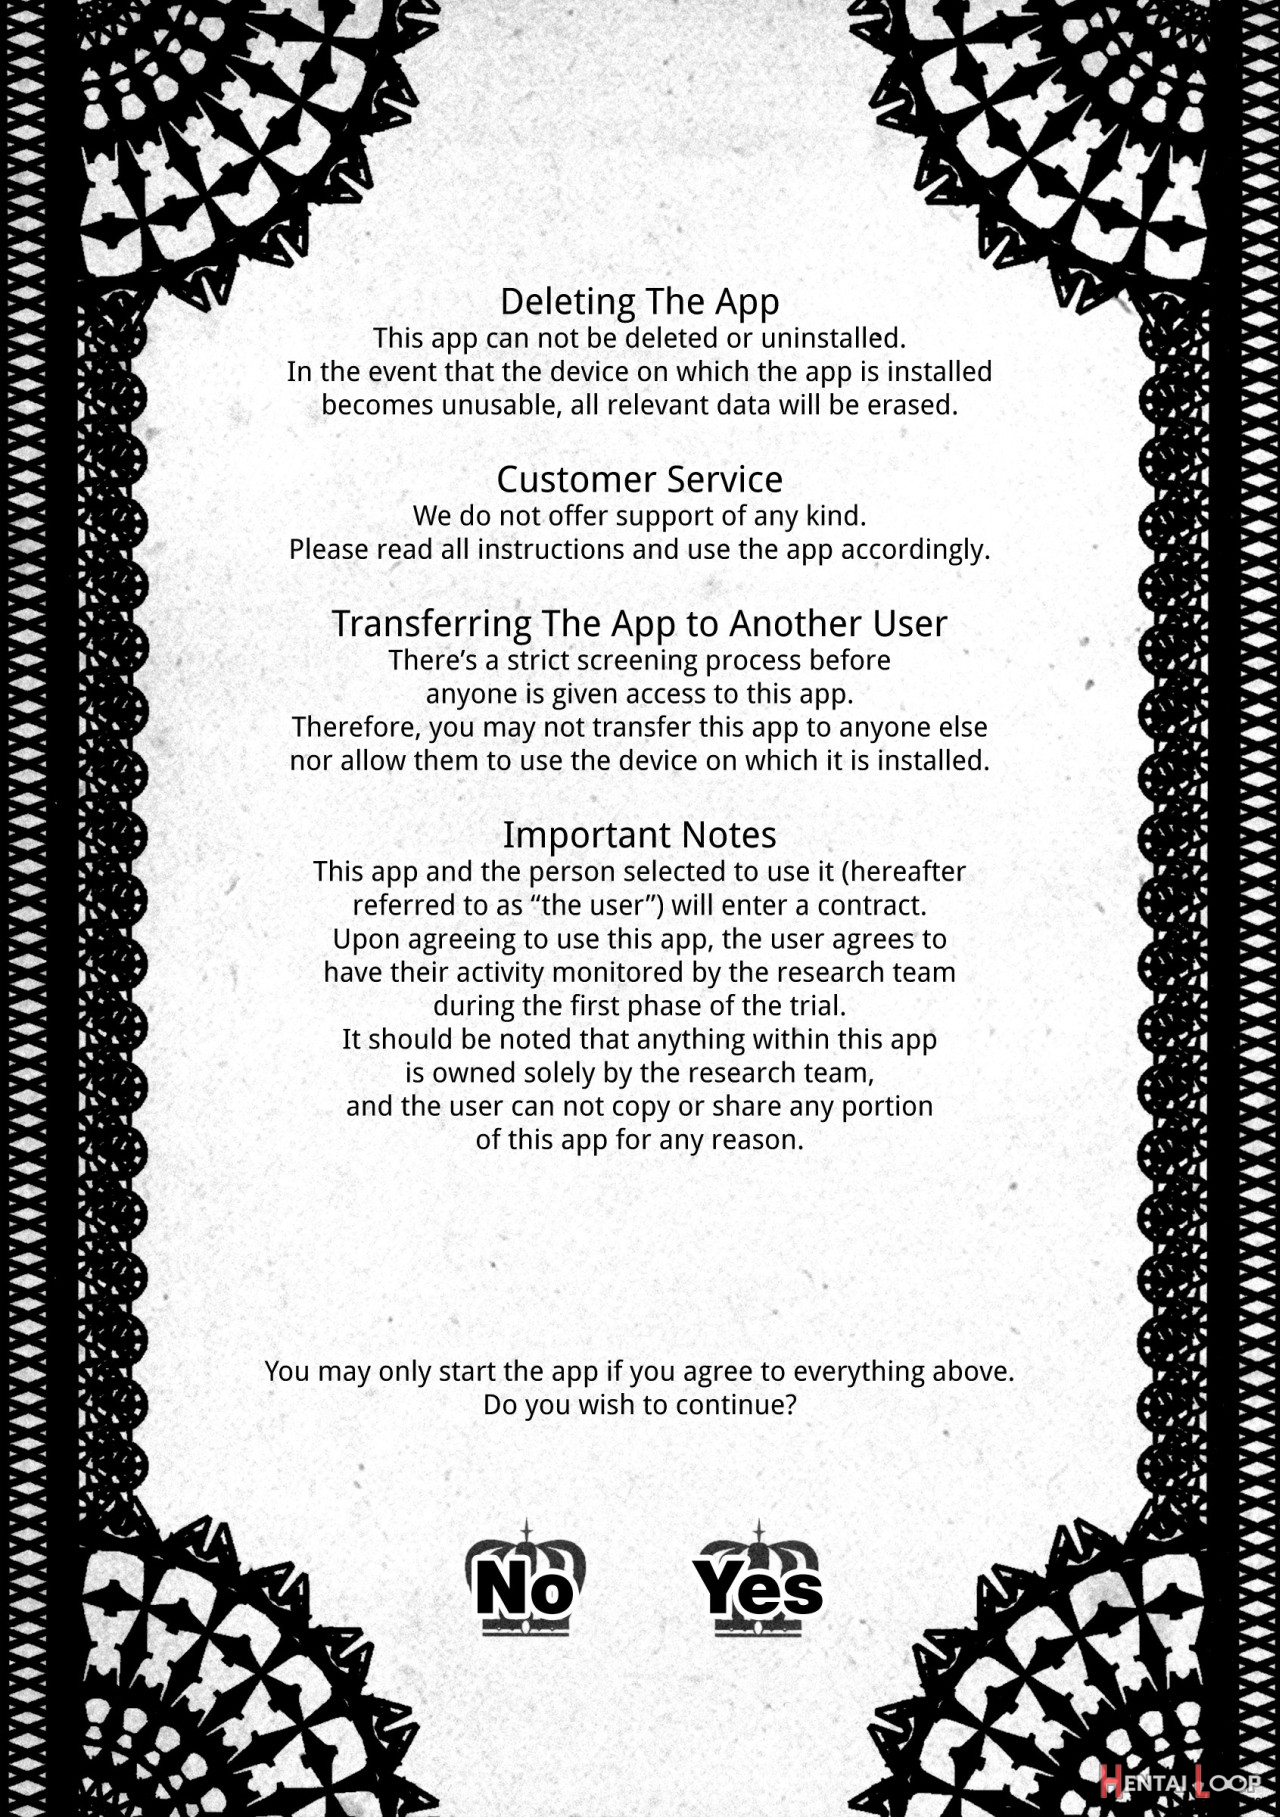 Ou-sama Appli - King App 1-1.5 page 3